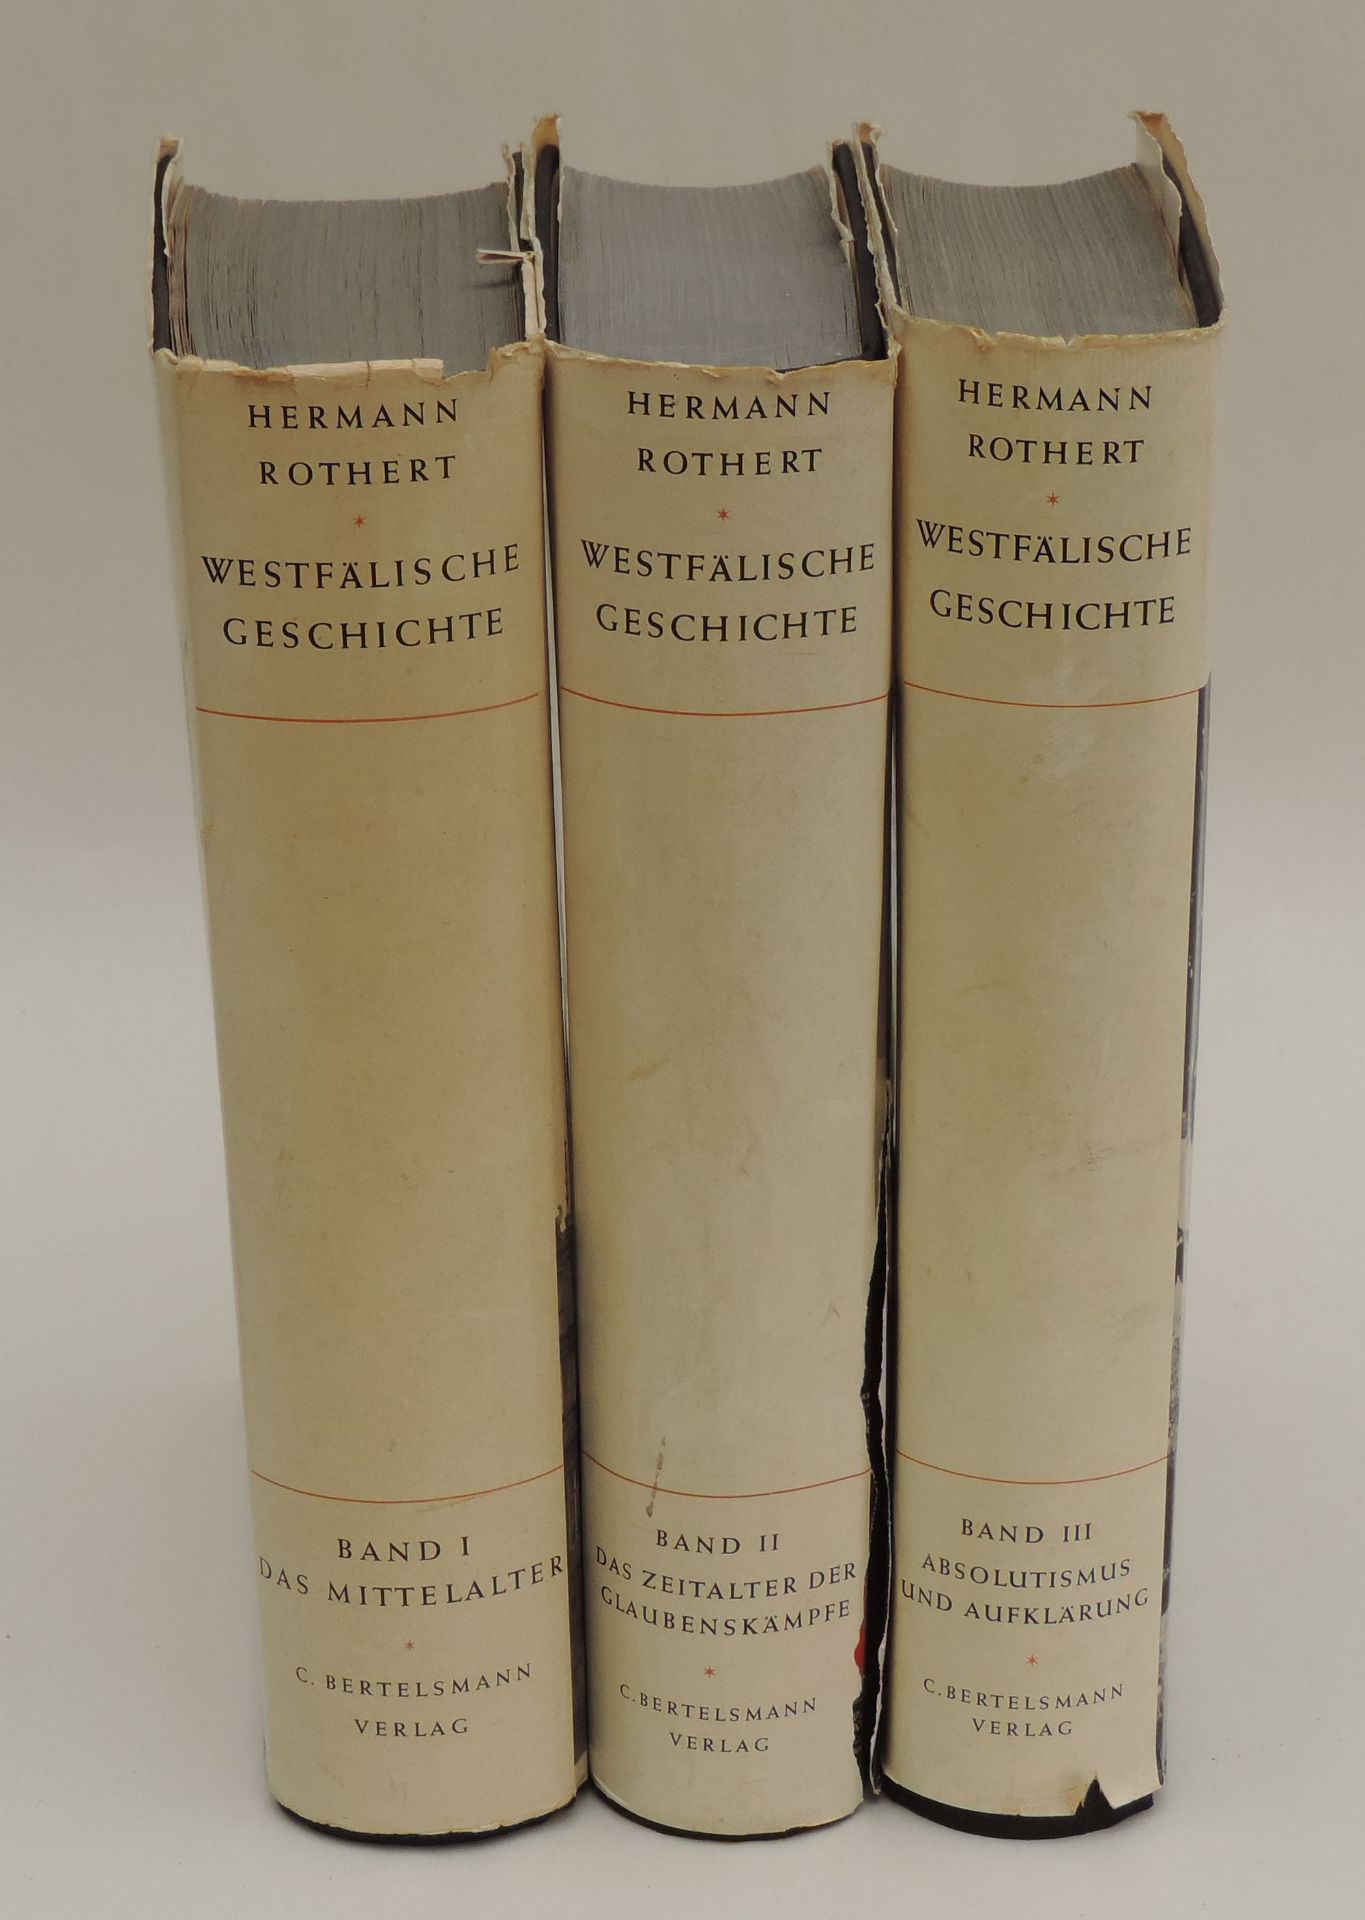 ROTHERT, Hermann, Westfälische Geschichte, 3 Bnde, 1184 S, zahlreiche zum Teil farbige Abb, - Bild 2 aus 2